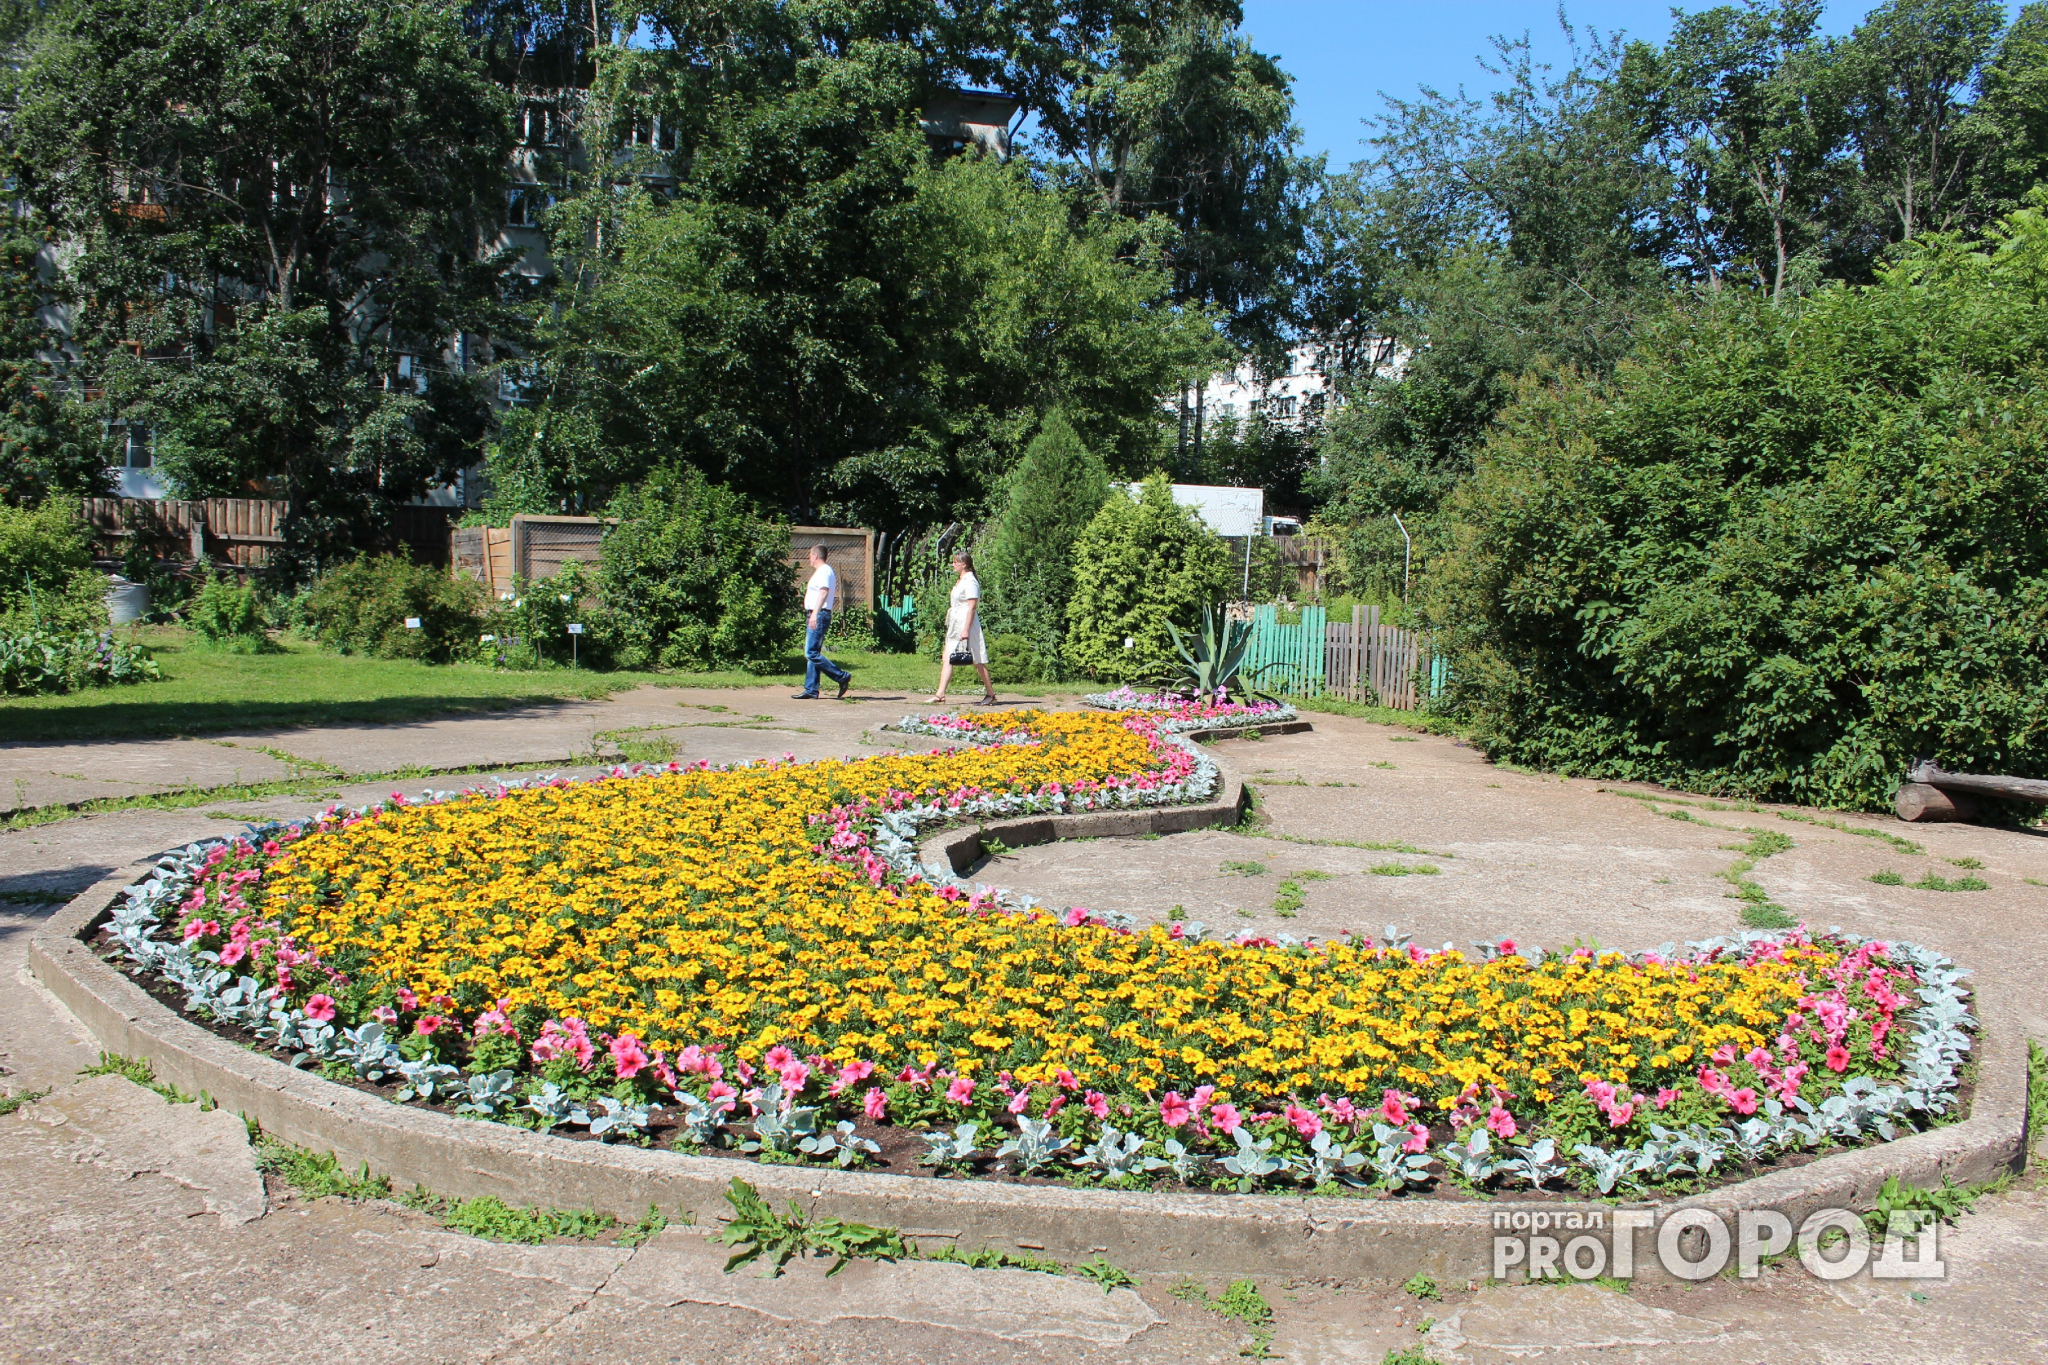 Ко Дню города в Кирове высадят 6 миллионов цветов